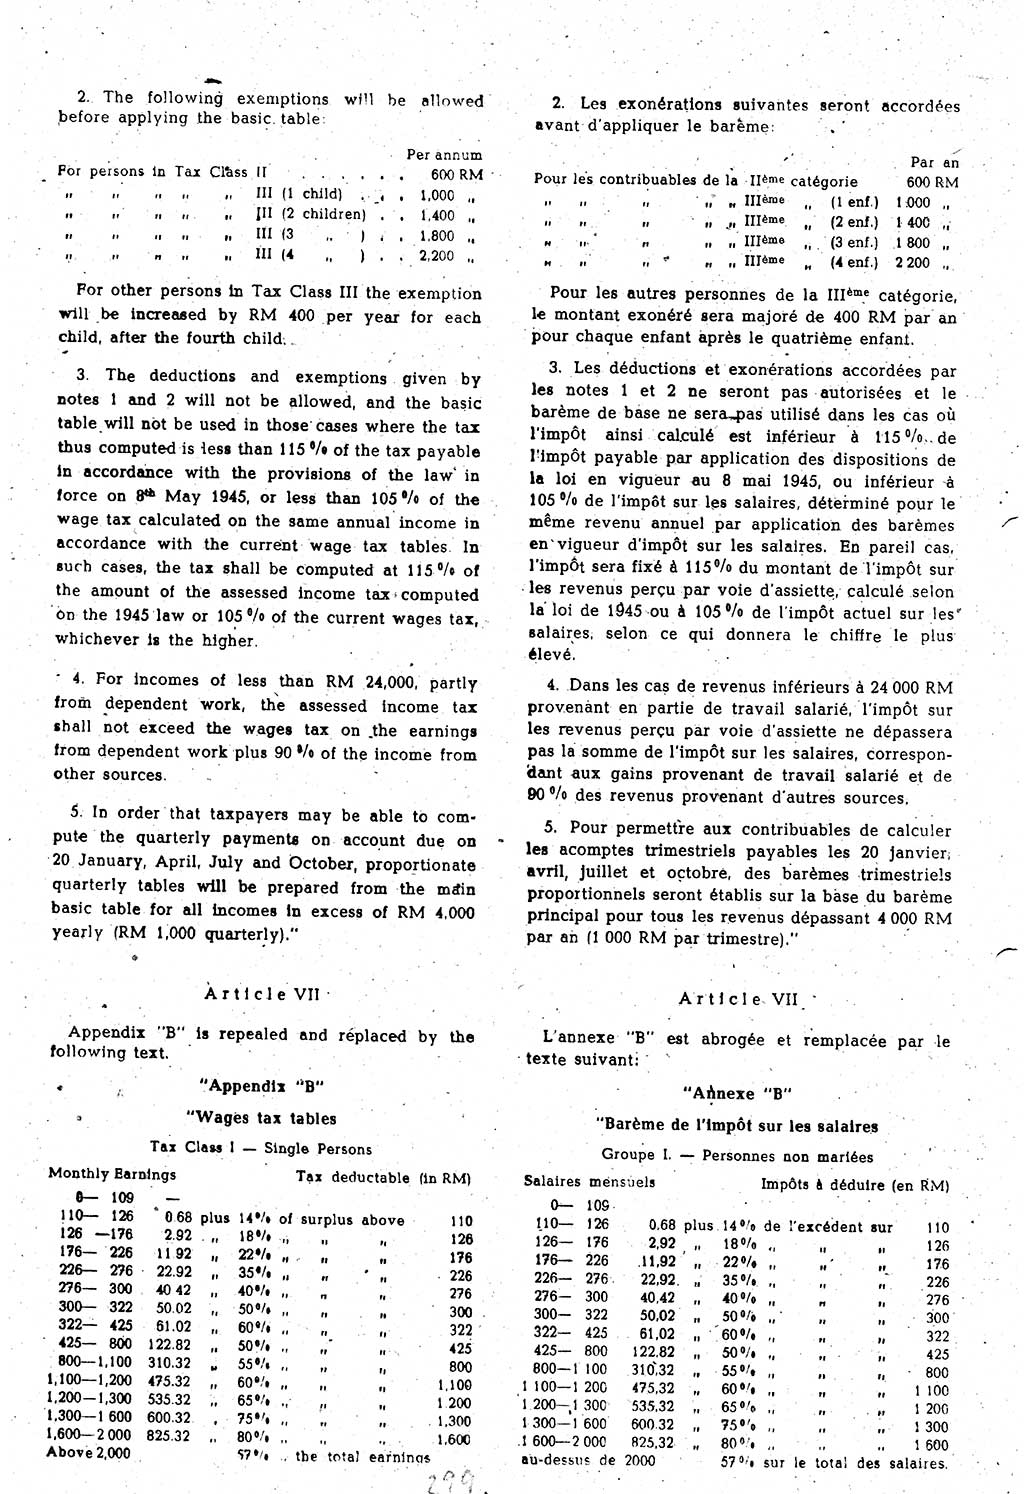 Amtsblatt des Kontrollrats (ABlKR) in Deutschland 1948, Seite 299/1 (ABlKR Dtl. 1948, S. 299/1)